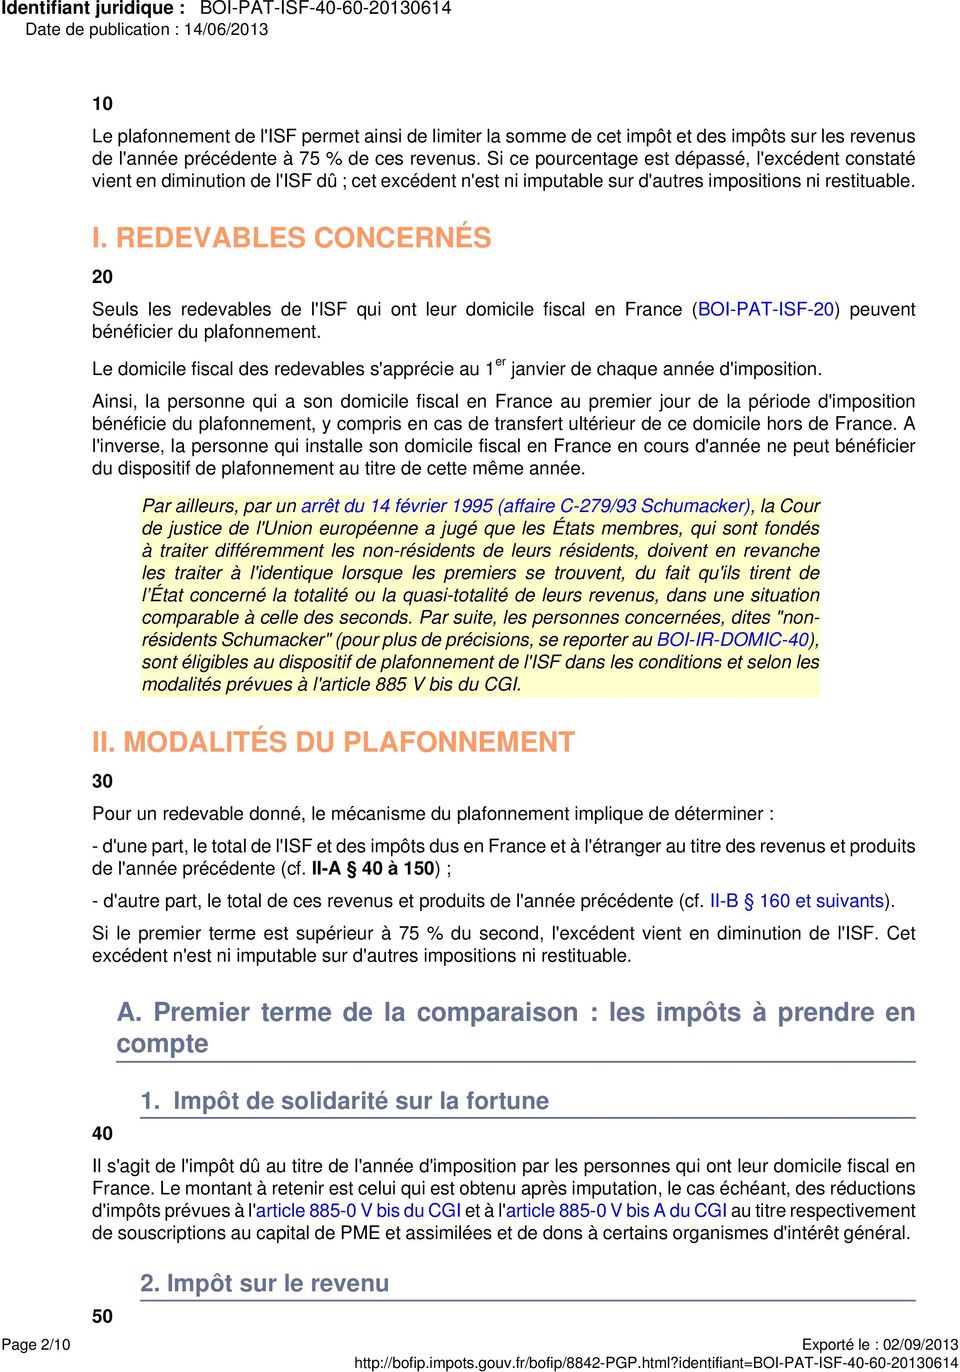 REDEVABLES CONCERNÉS 20 Seuls les redevables de l'isf qui ont leur domicile fiscal en France (BOI-PAT-ISF-20) peuvent bénéficier du plafonnement.